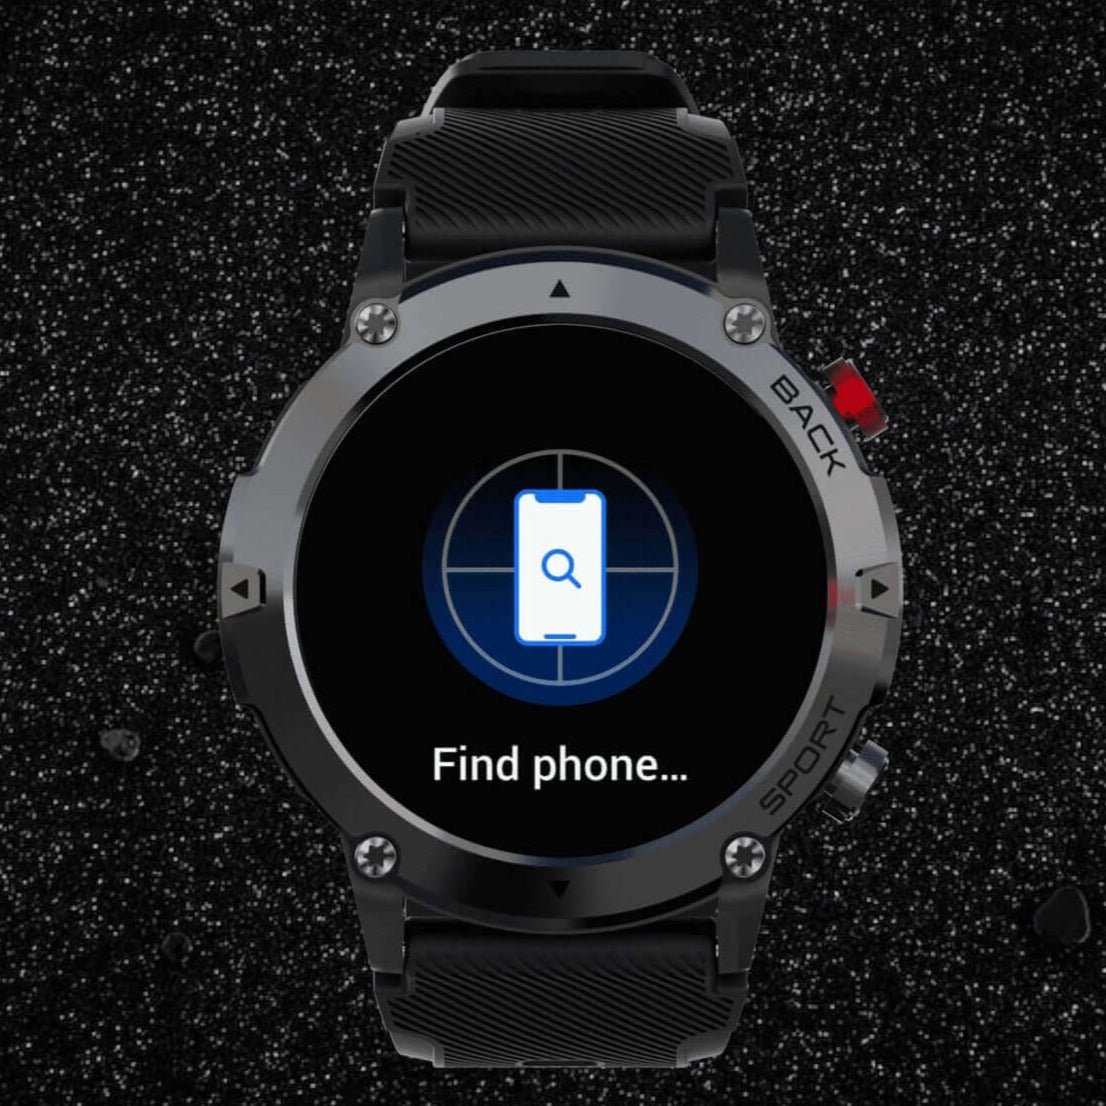 ZE Active Smartwatch Find Phone